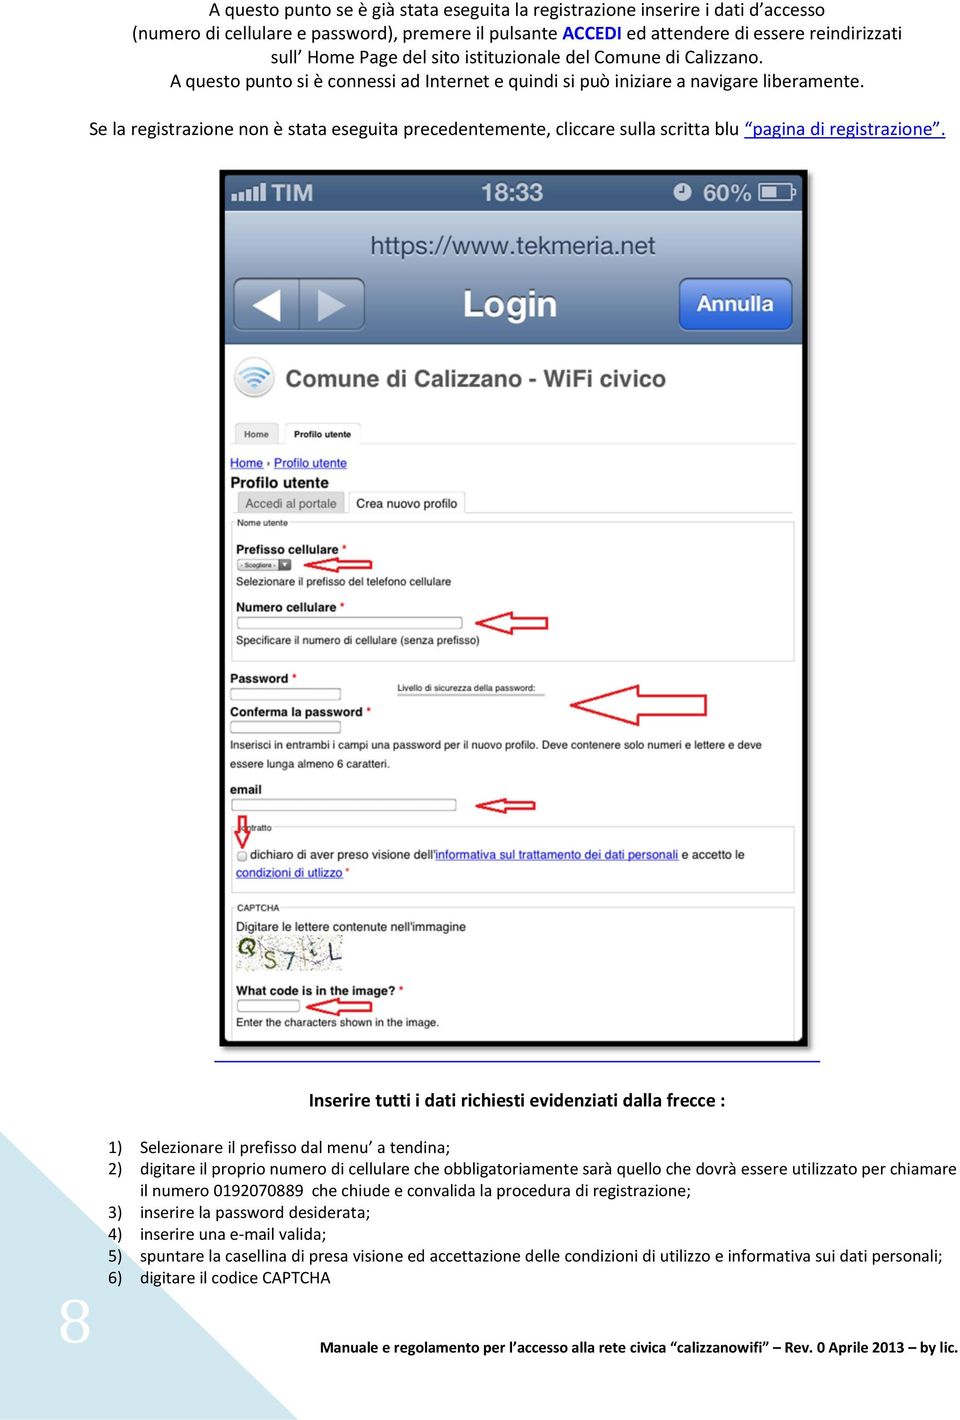 Se la registrazione non è stata eseguita precedentemente, cliccare sulla scritta blu pagina di registrazione.